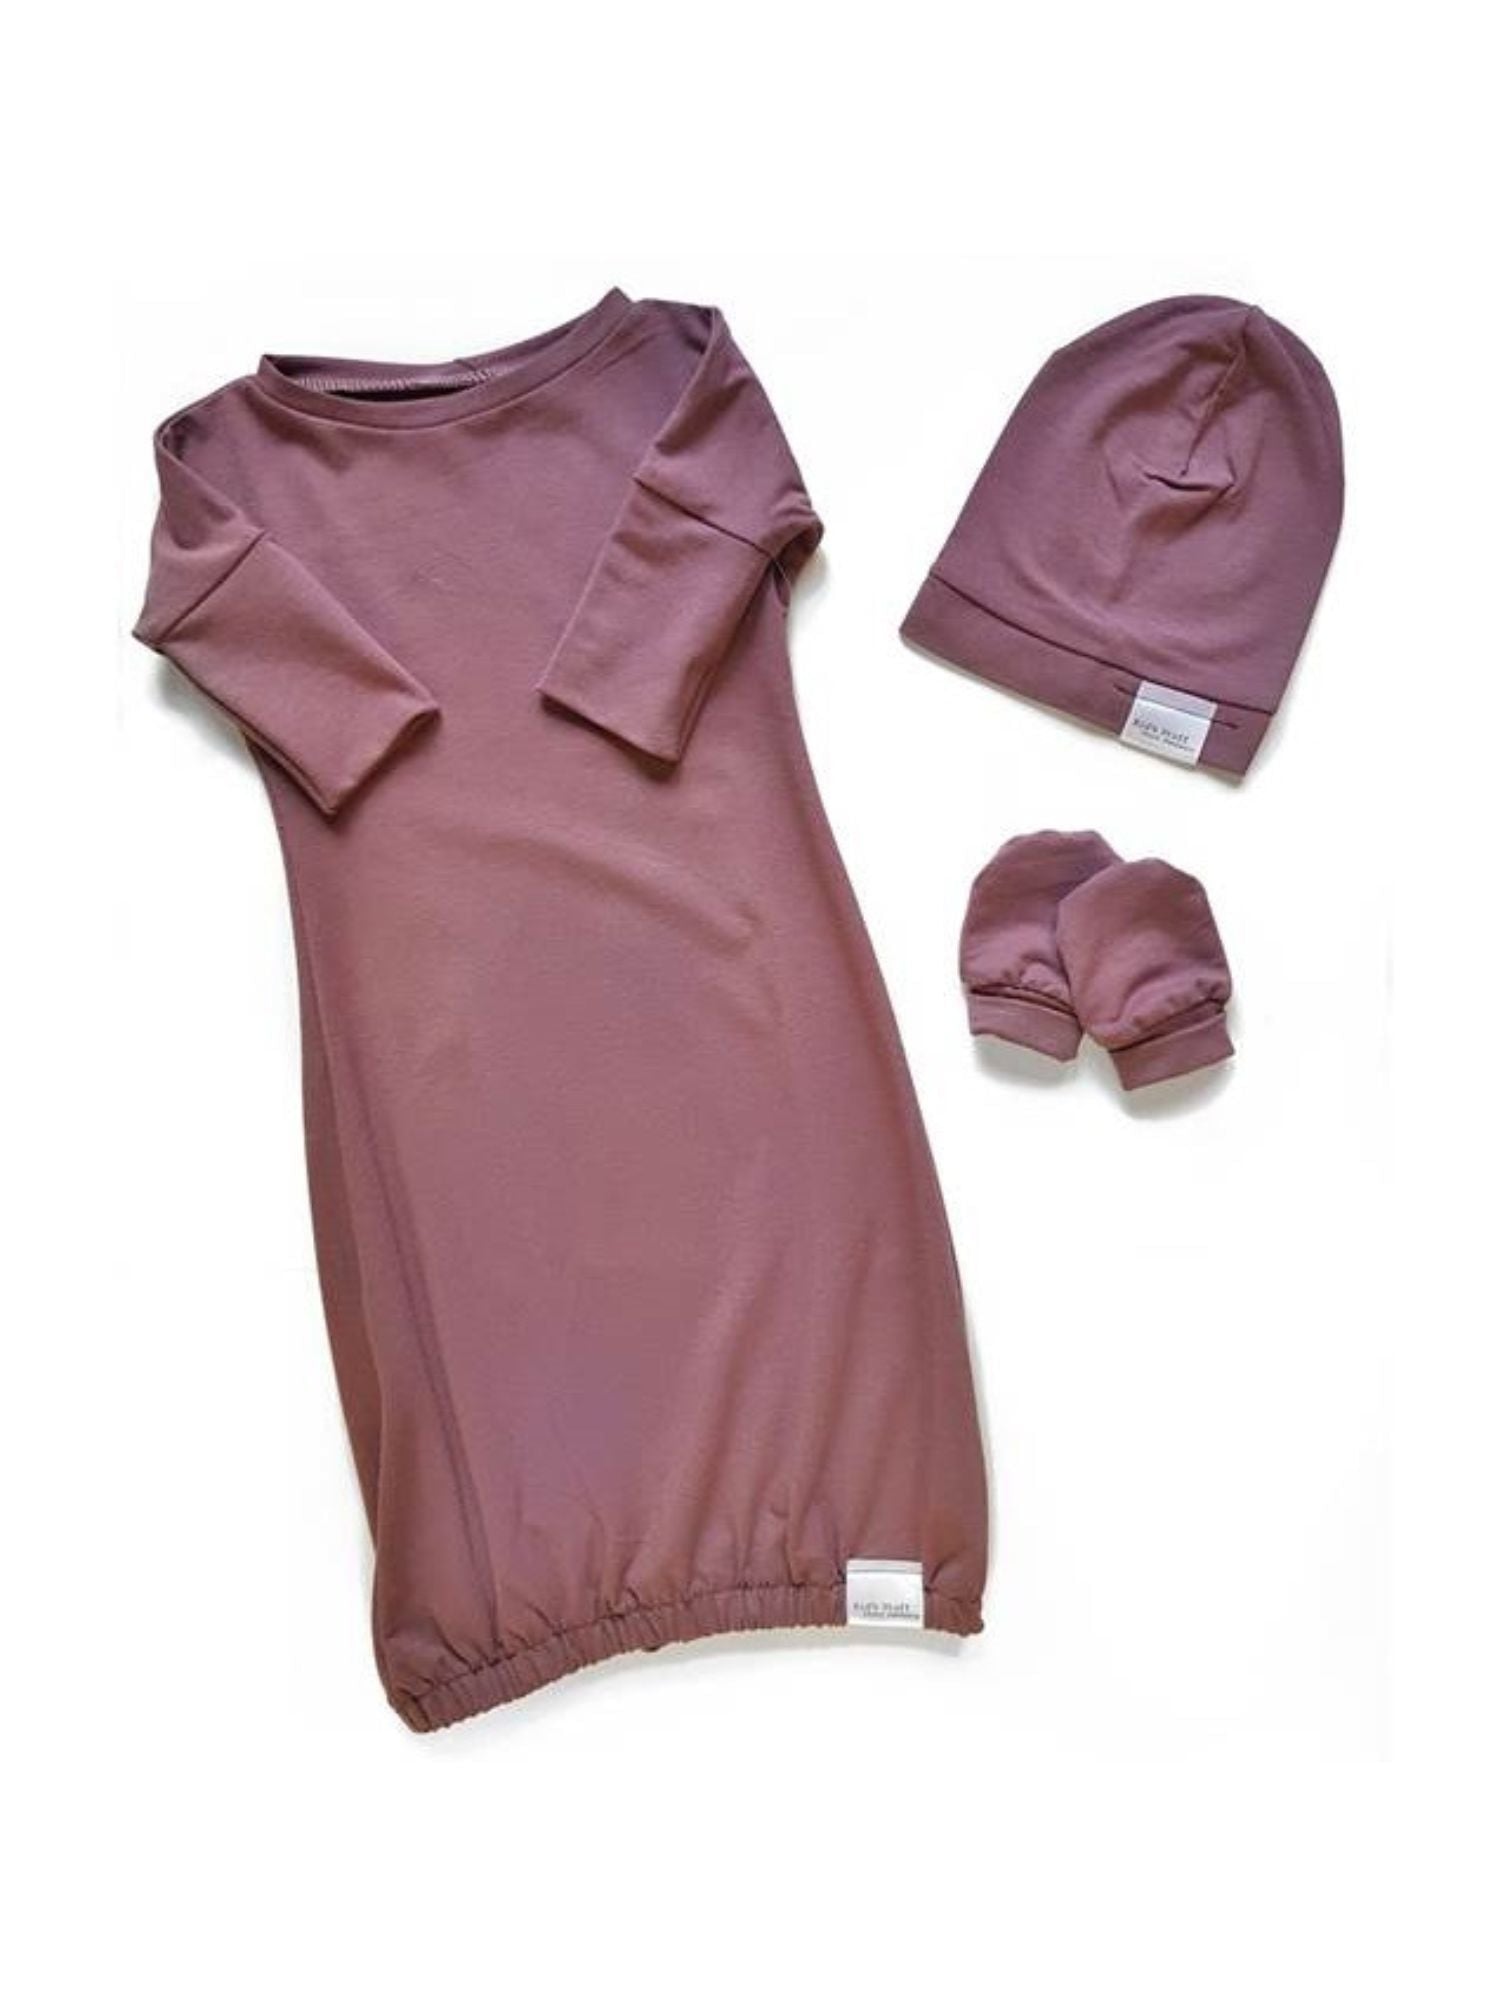 Newborn Set Gown | Rose Brown